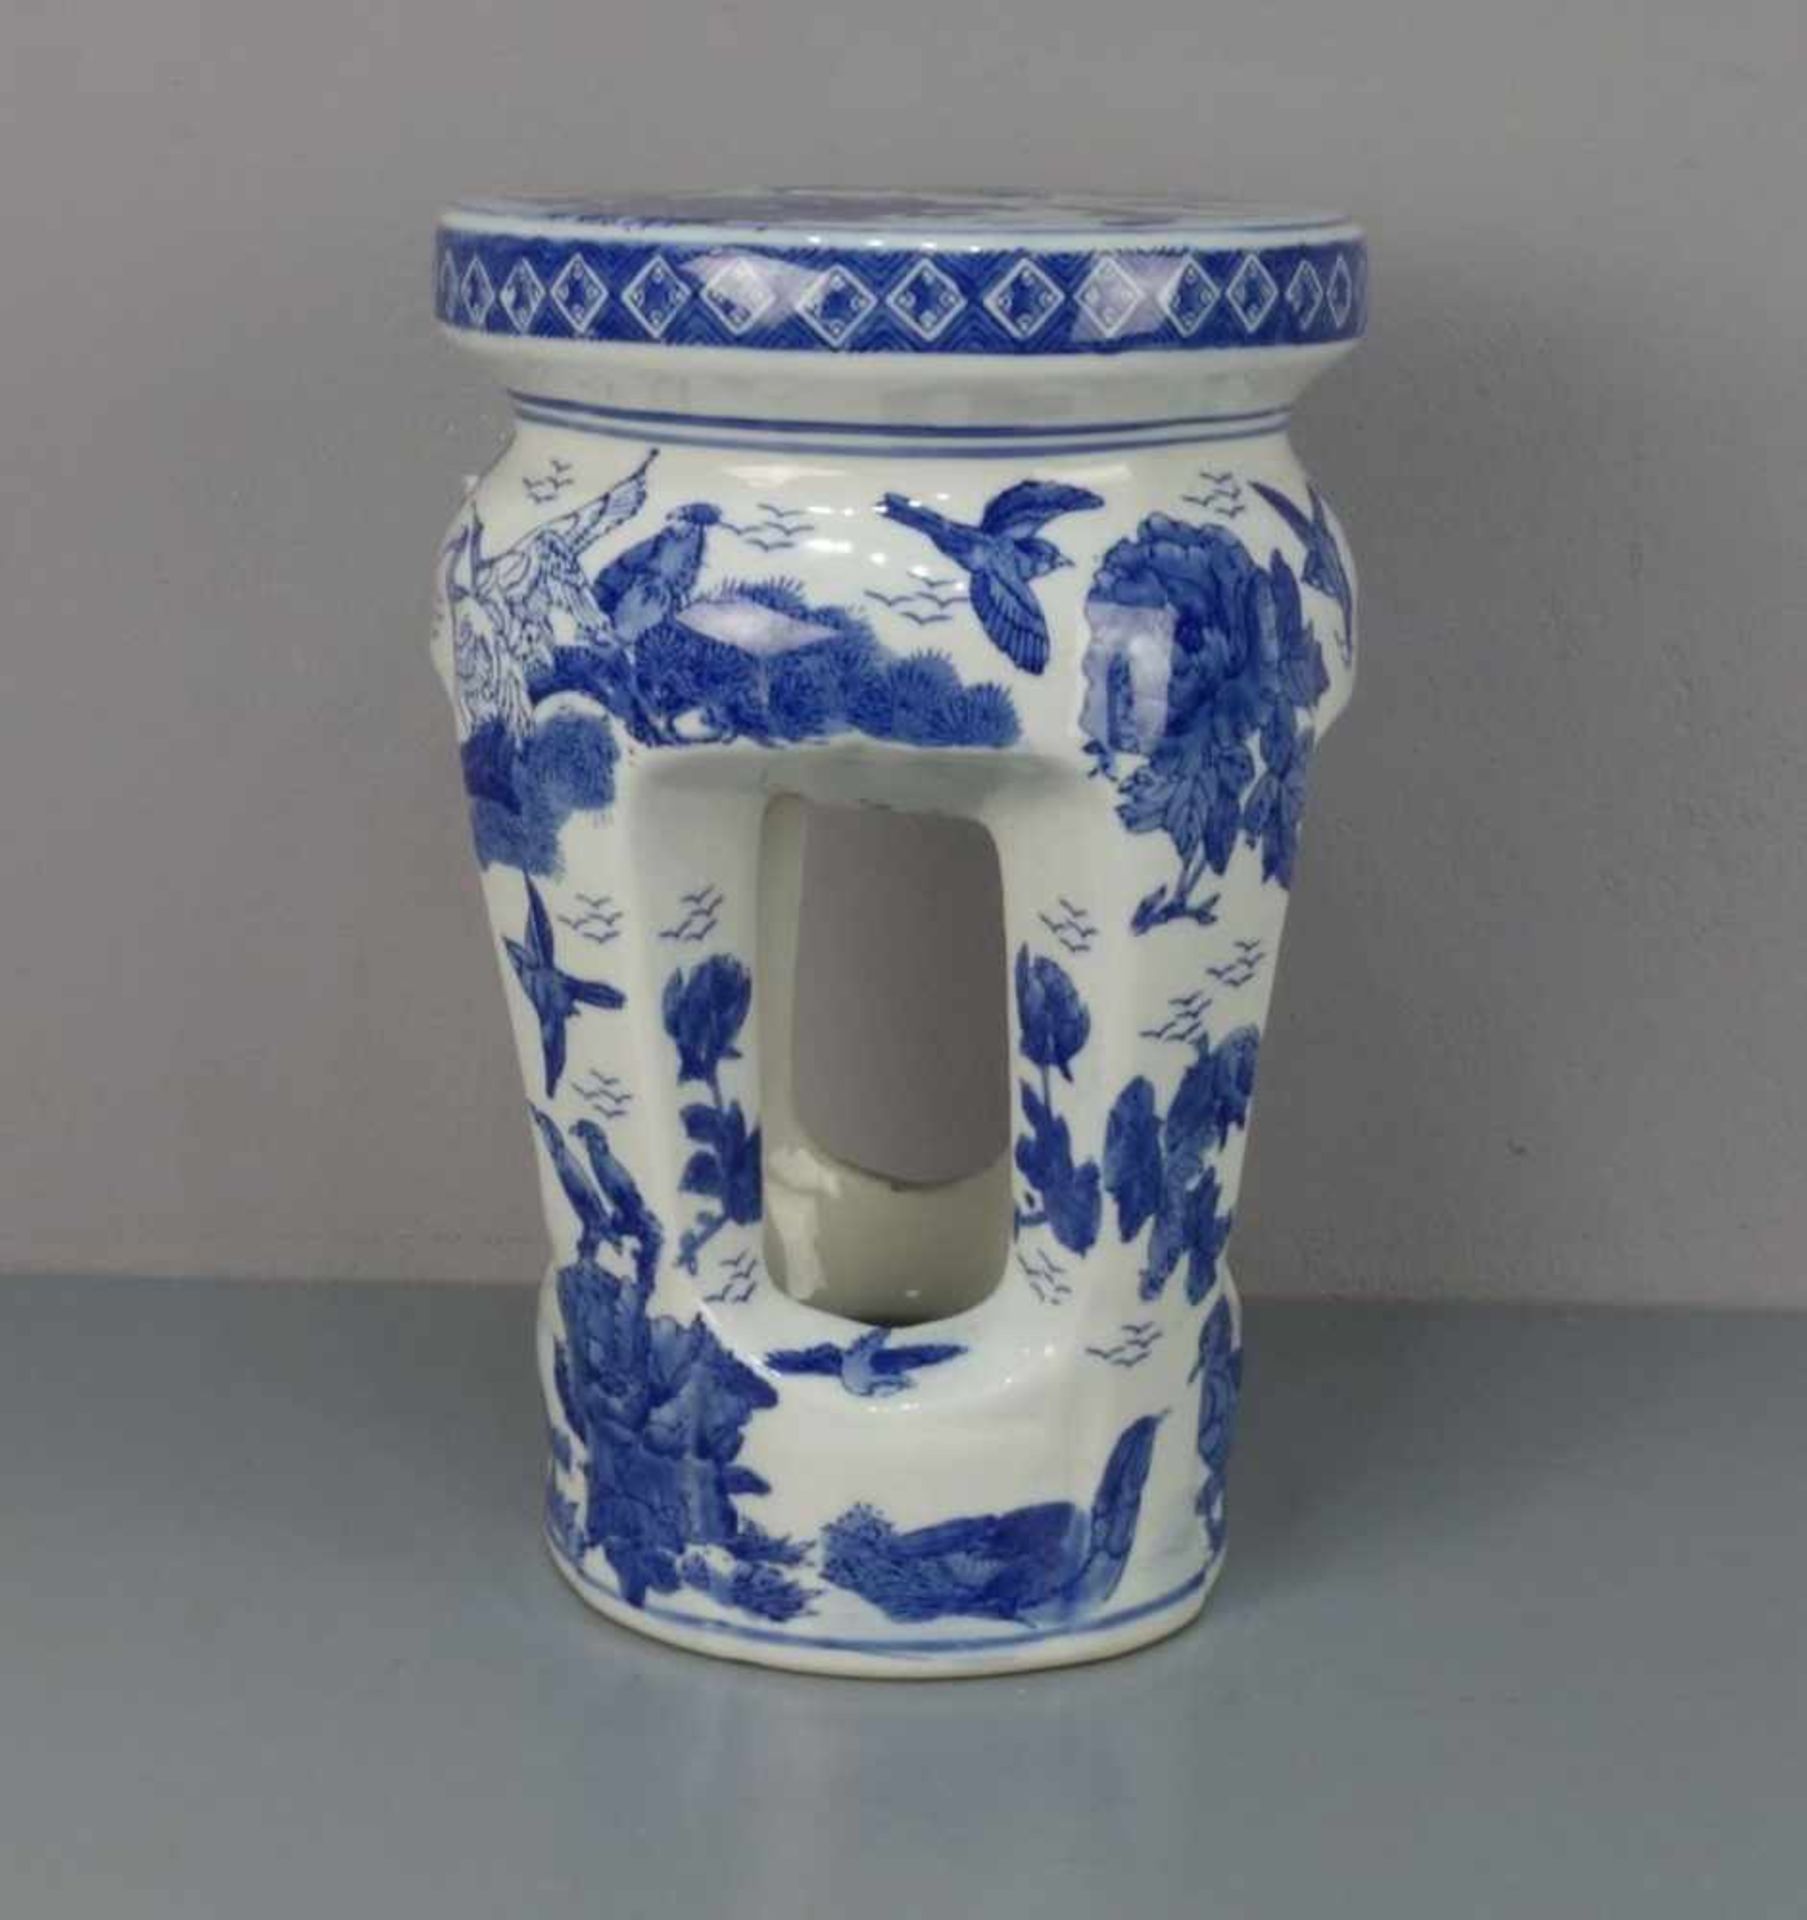 CHINESISCHER HOCKER / stool, Porzellan mit Blaumalerei (ungemarkt), 2. Hälfte 20. Jh.; Rundstand,